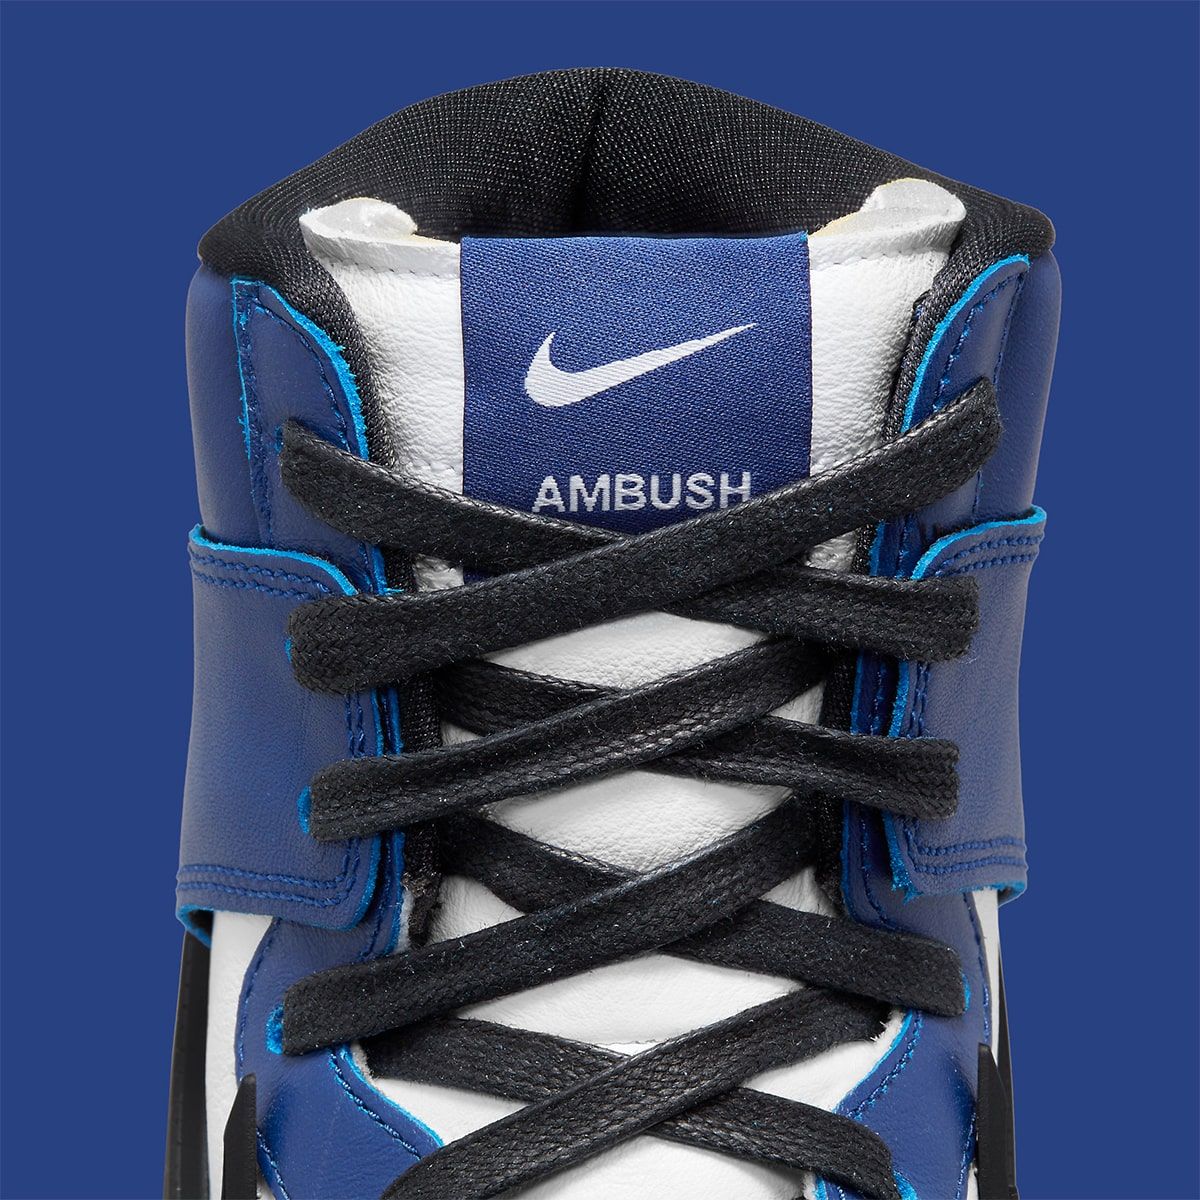 Where to Buy the AMBUSH x Nike Dunk High 